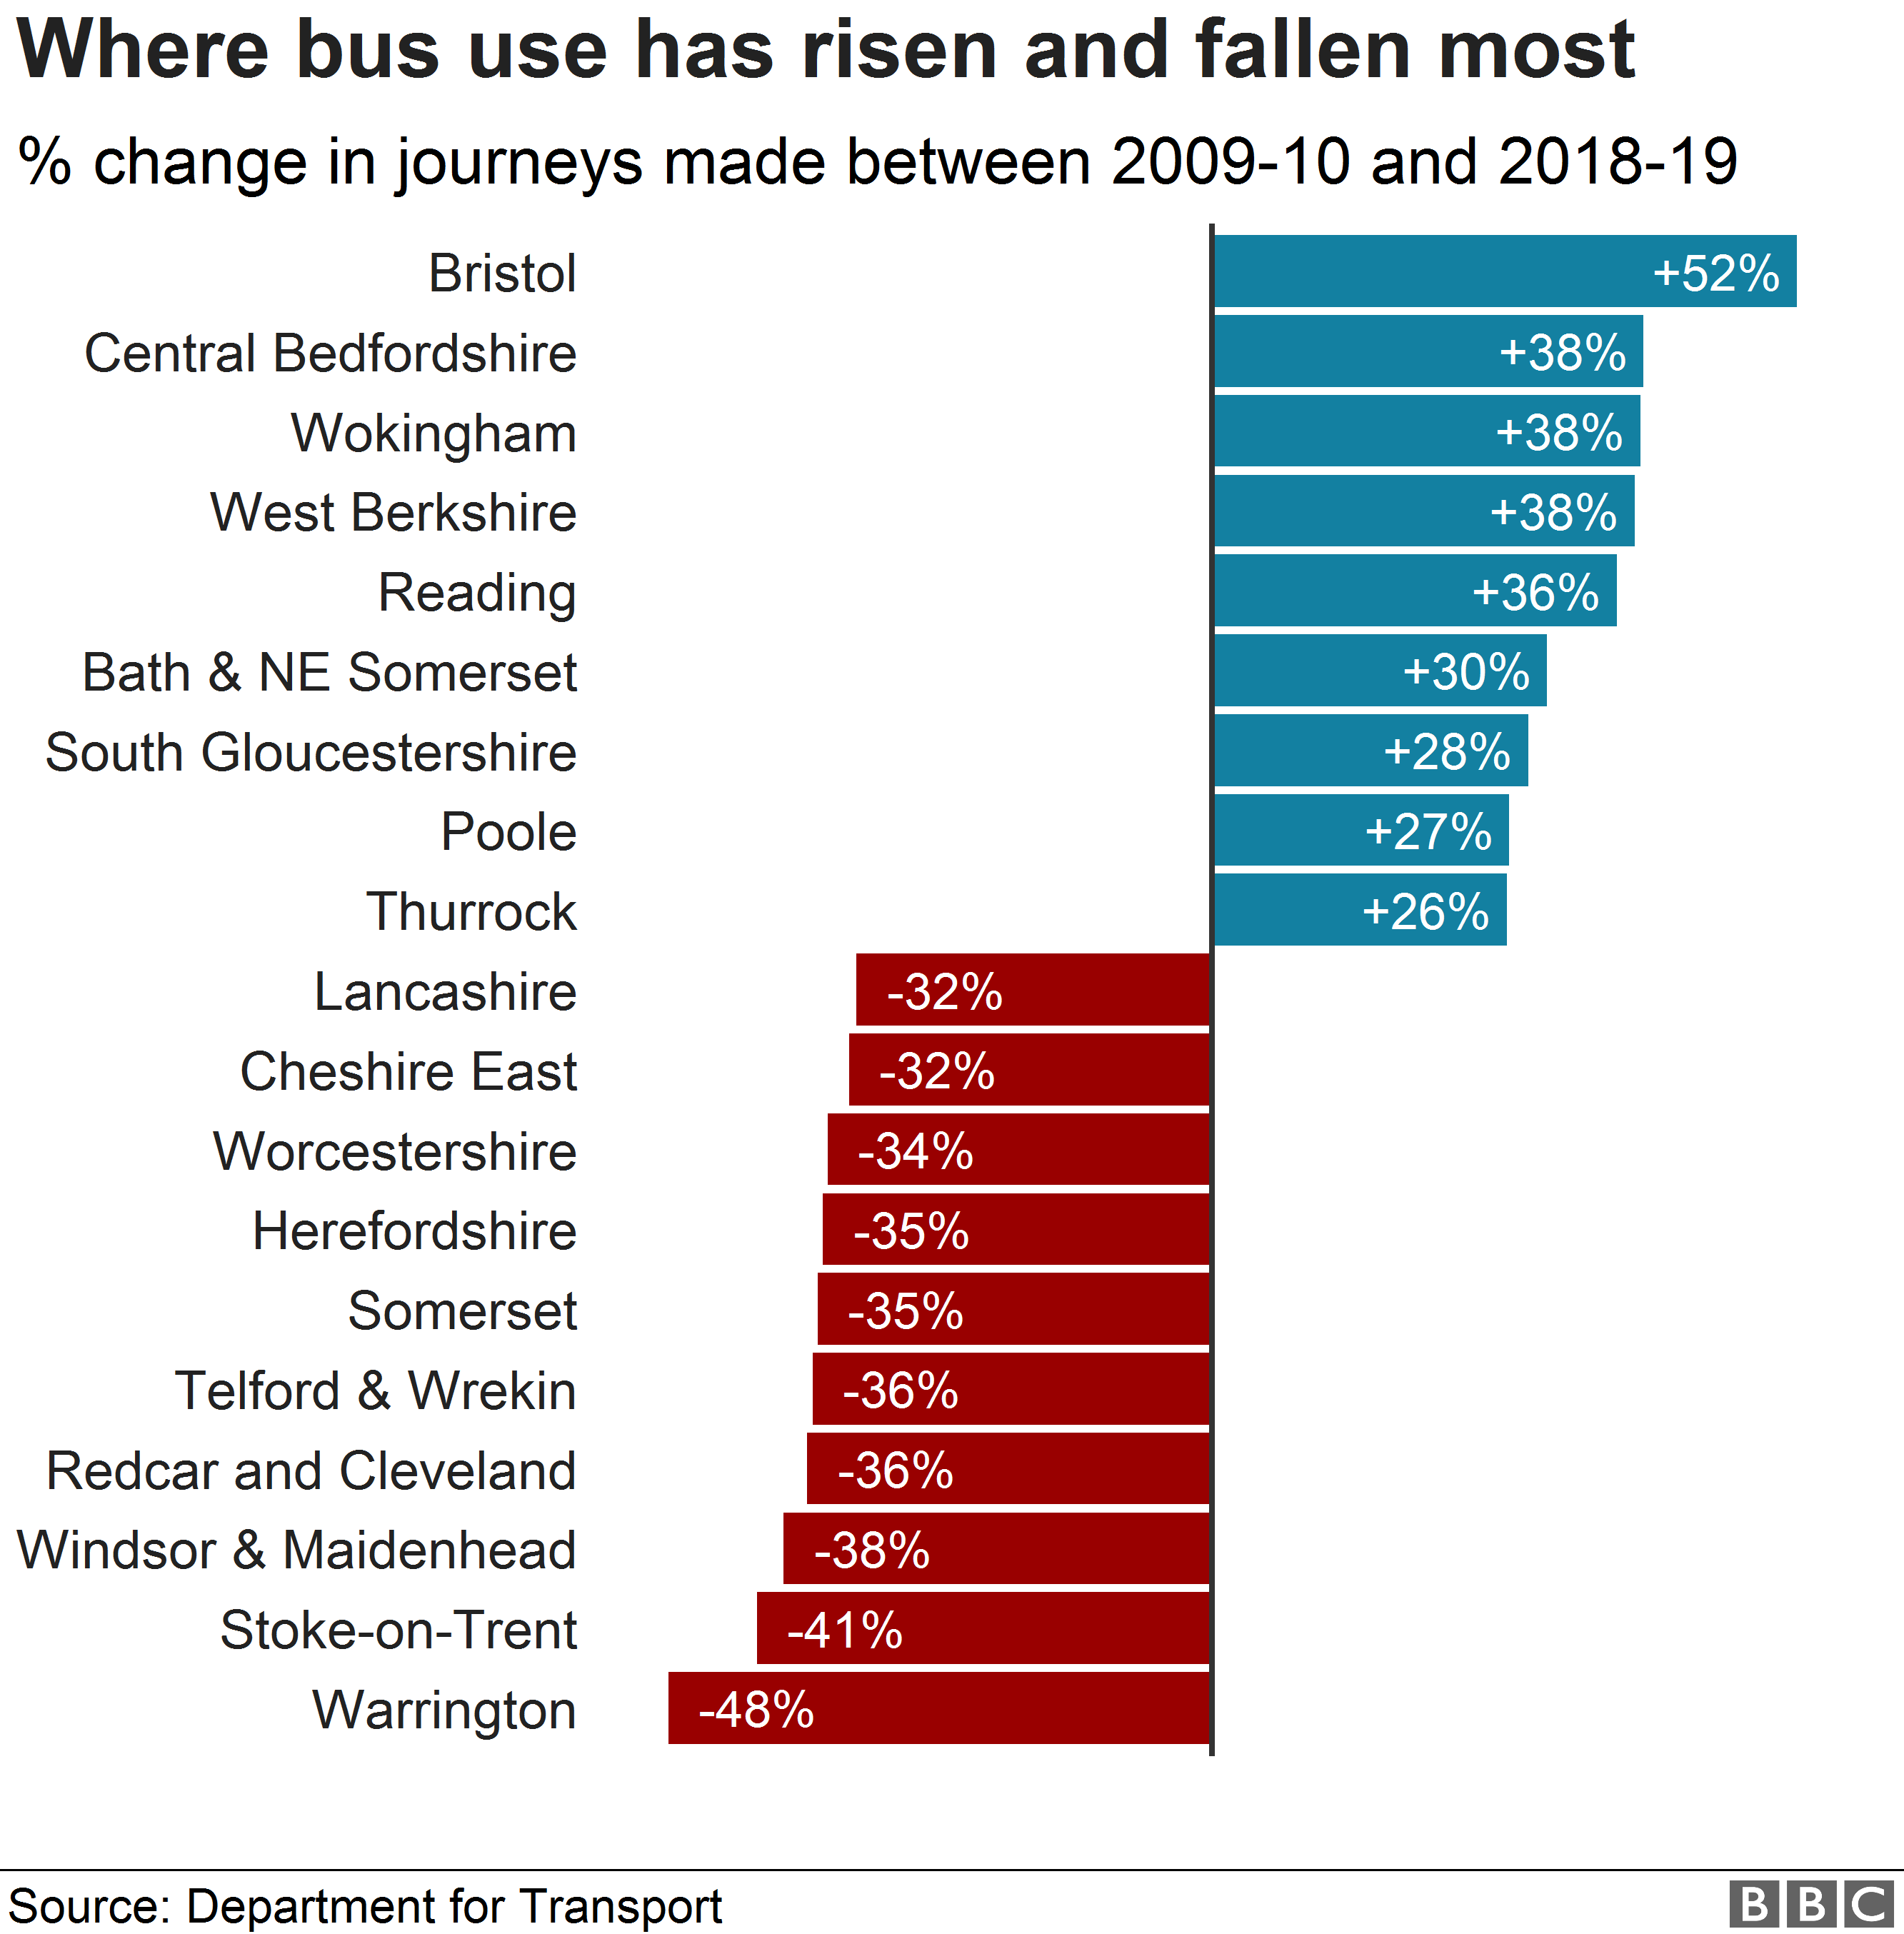 Где использование автобусов выросло и упало больше всего